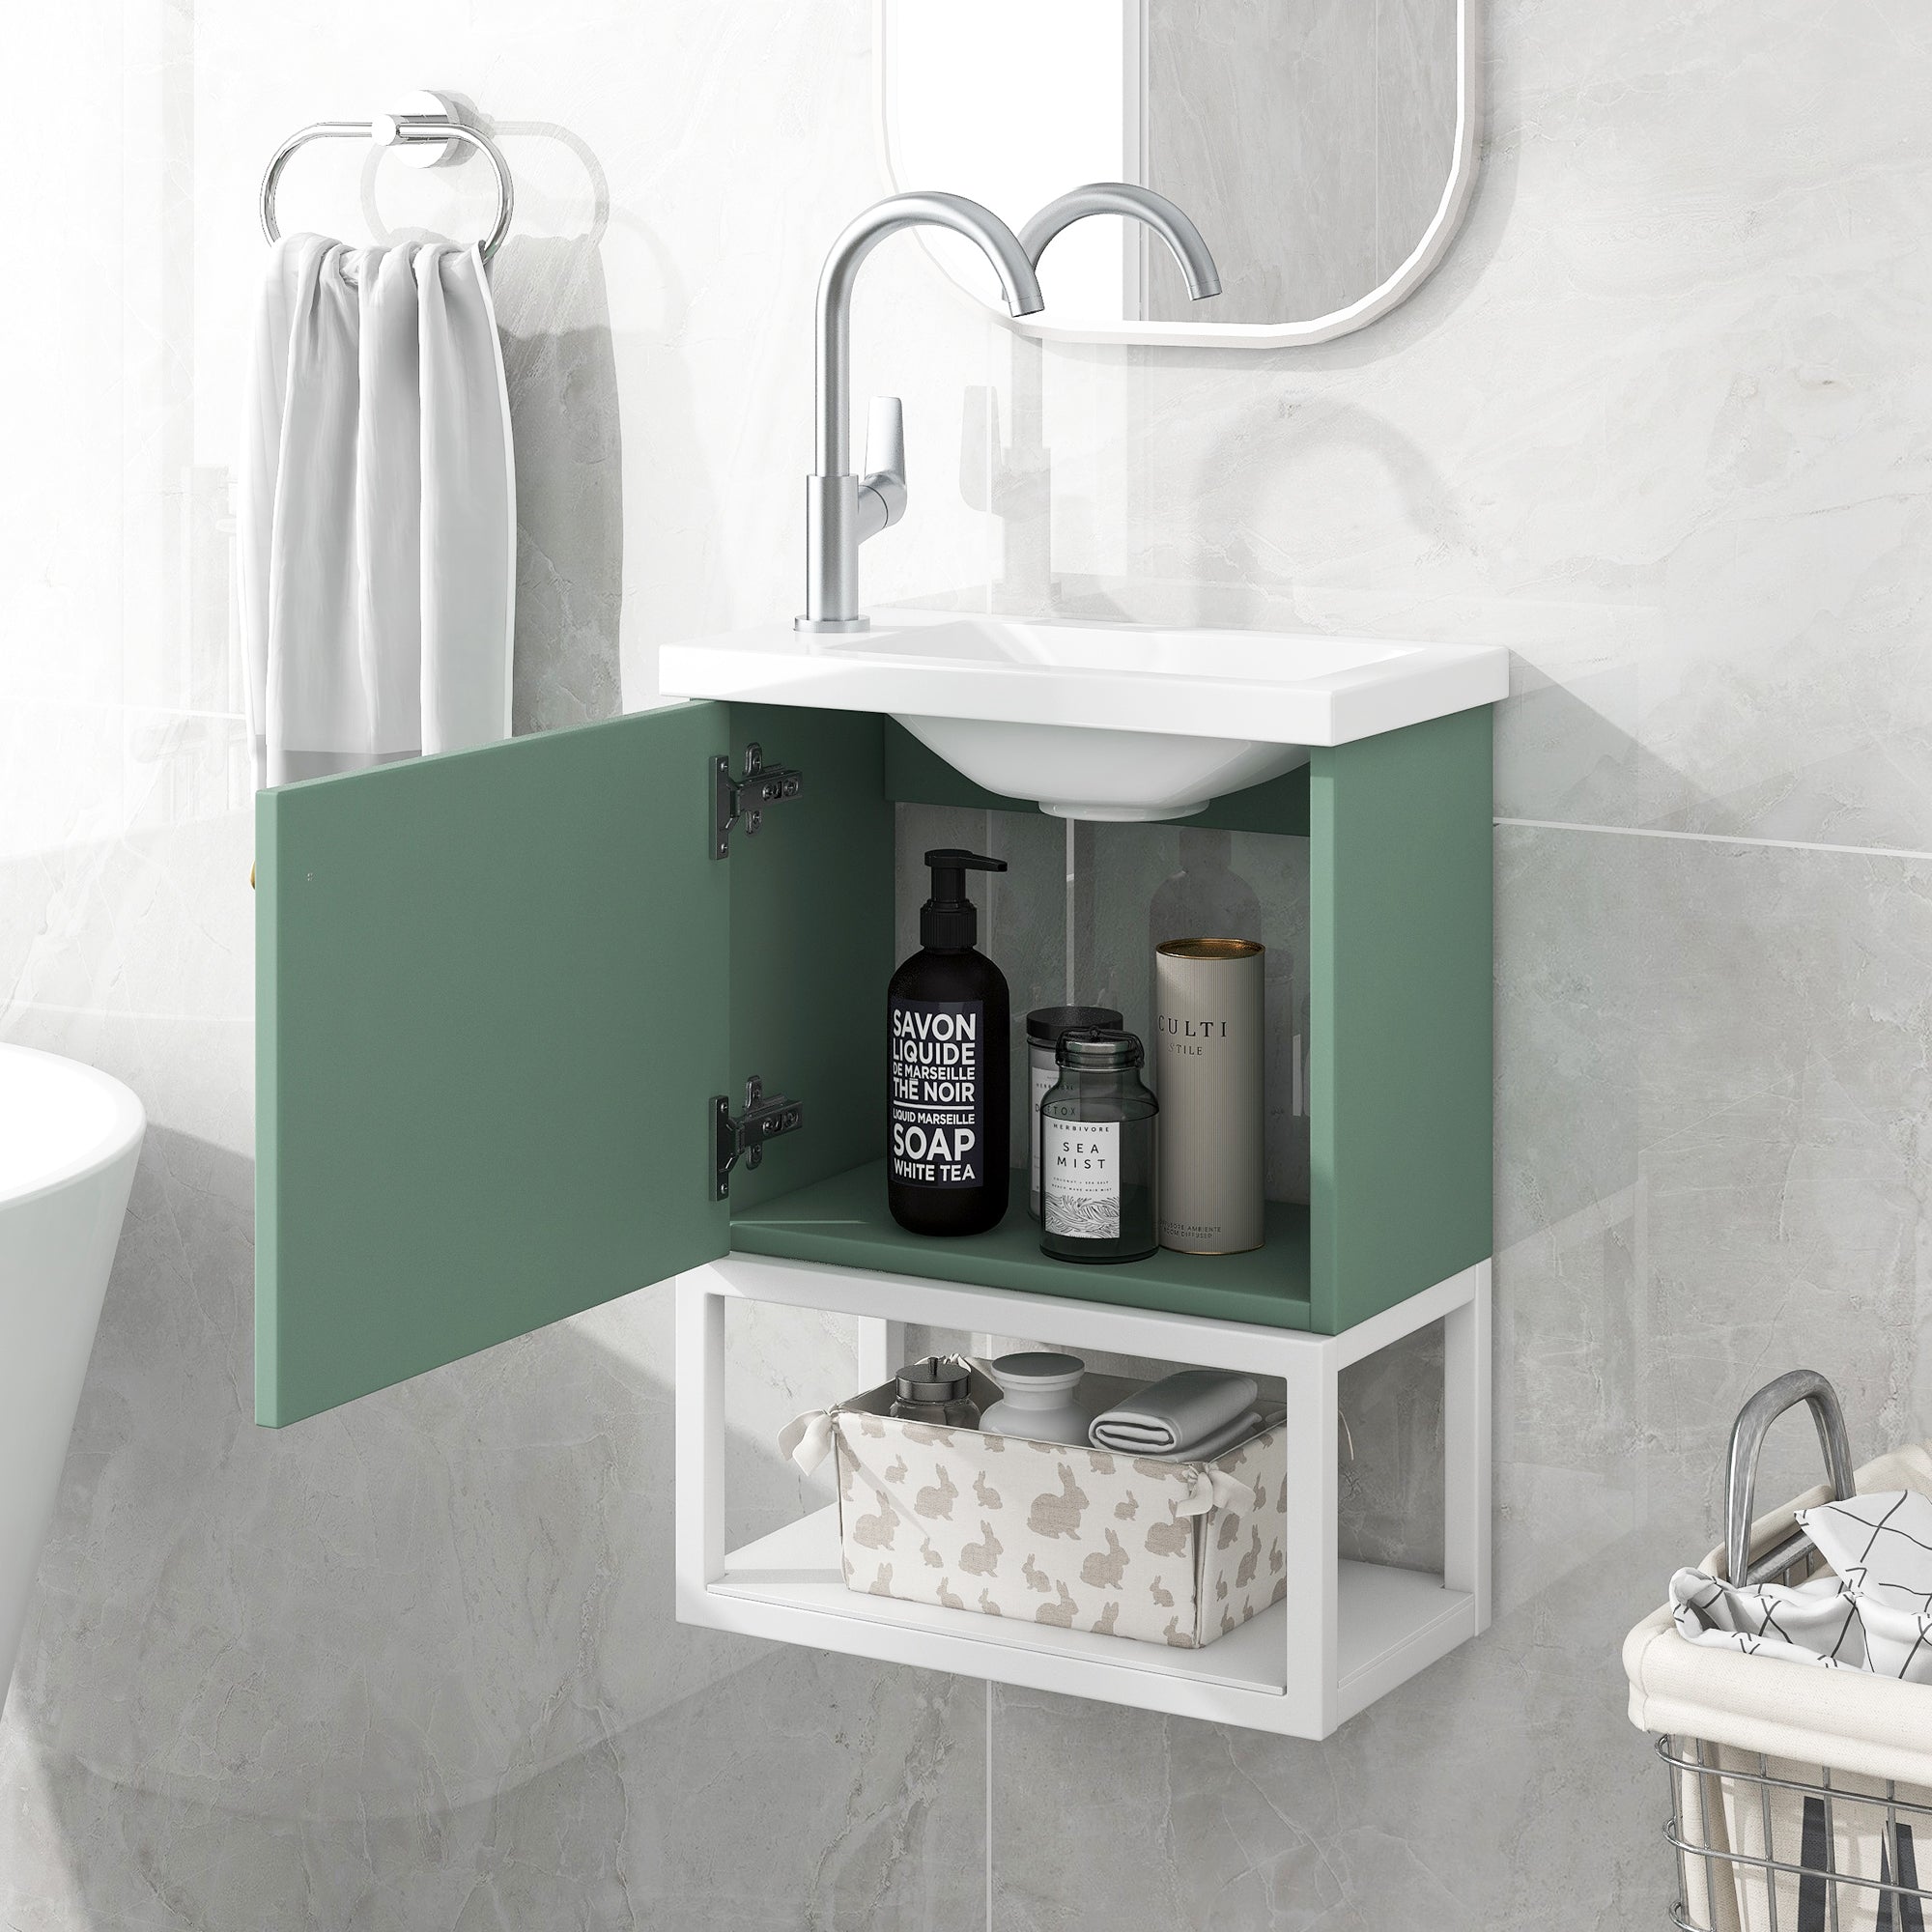 okiwsh Badezimmerwaschbecken 39 x 21 x 50 cm, Badezimmermöbel, kleines Waschbecken mit Schminktisch, hängender Schminktisch, Waschbeckenschrank, Badezimmermöbel (weiß und grün)